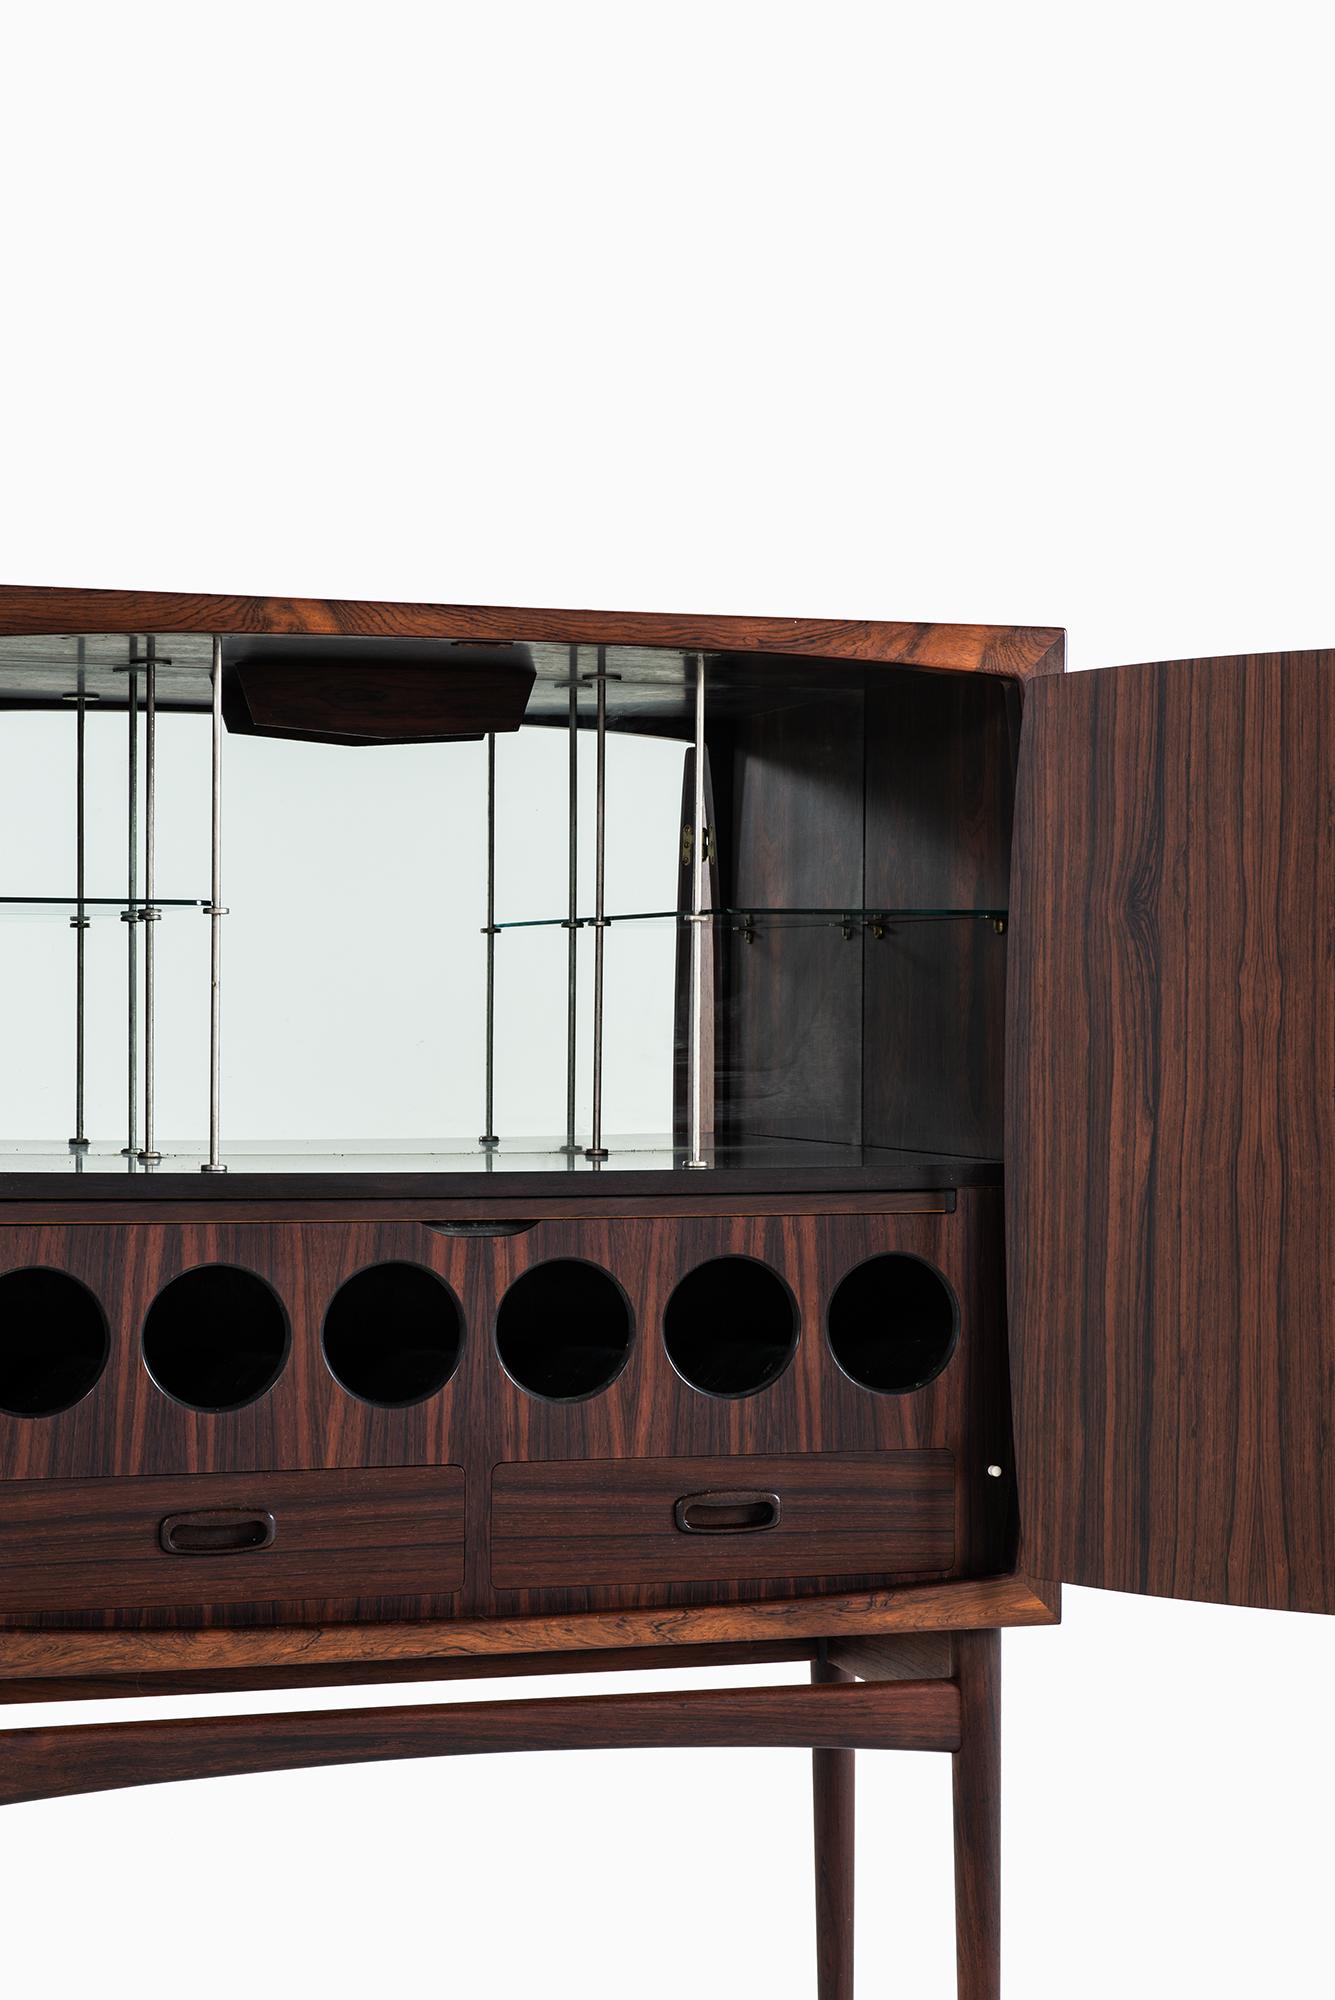 Rare bar cabinet model Bacchus designed by Torbjørn Afdal. Produced by Mellemstrands møbelfabrik in Norway.